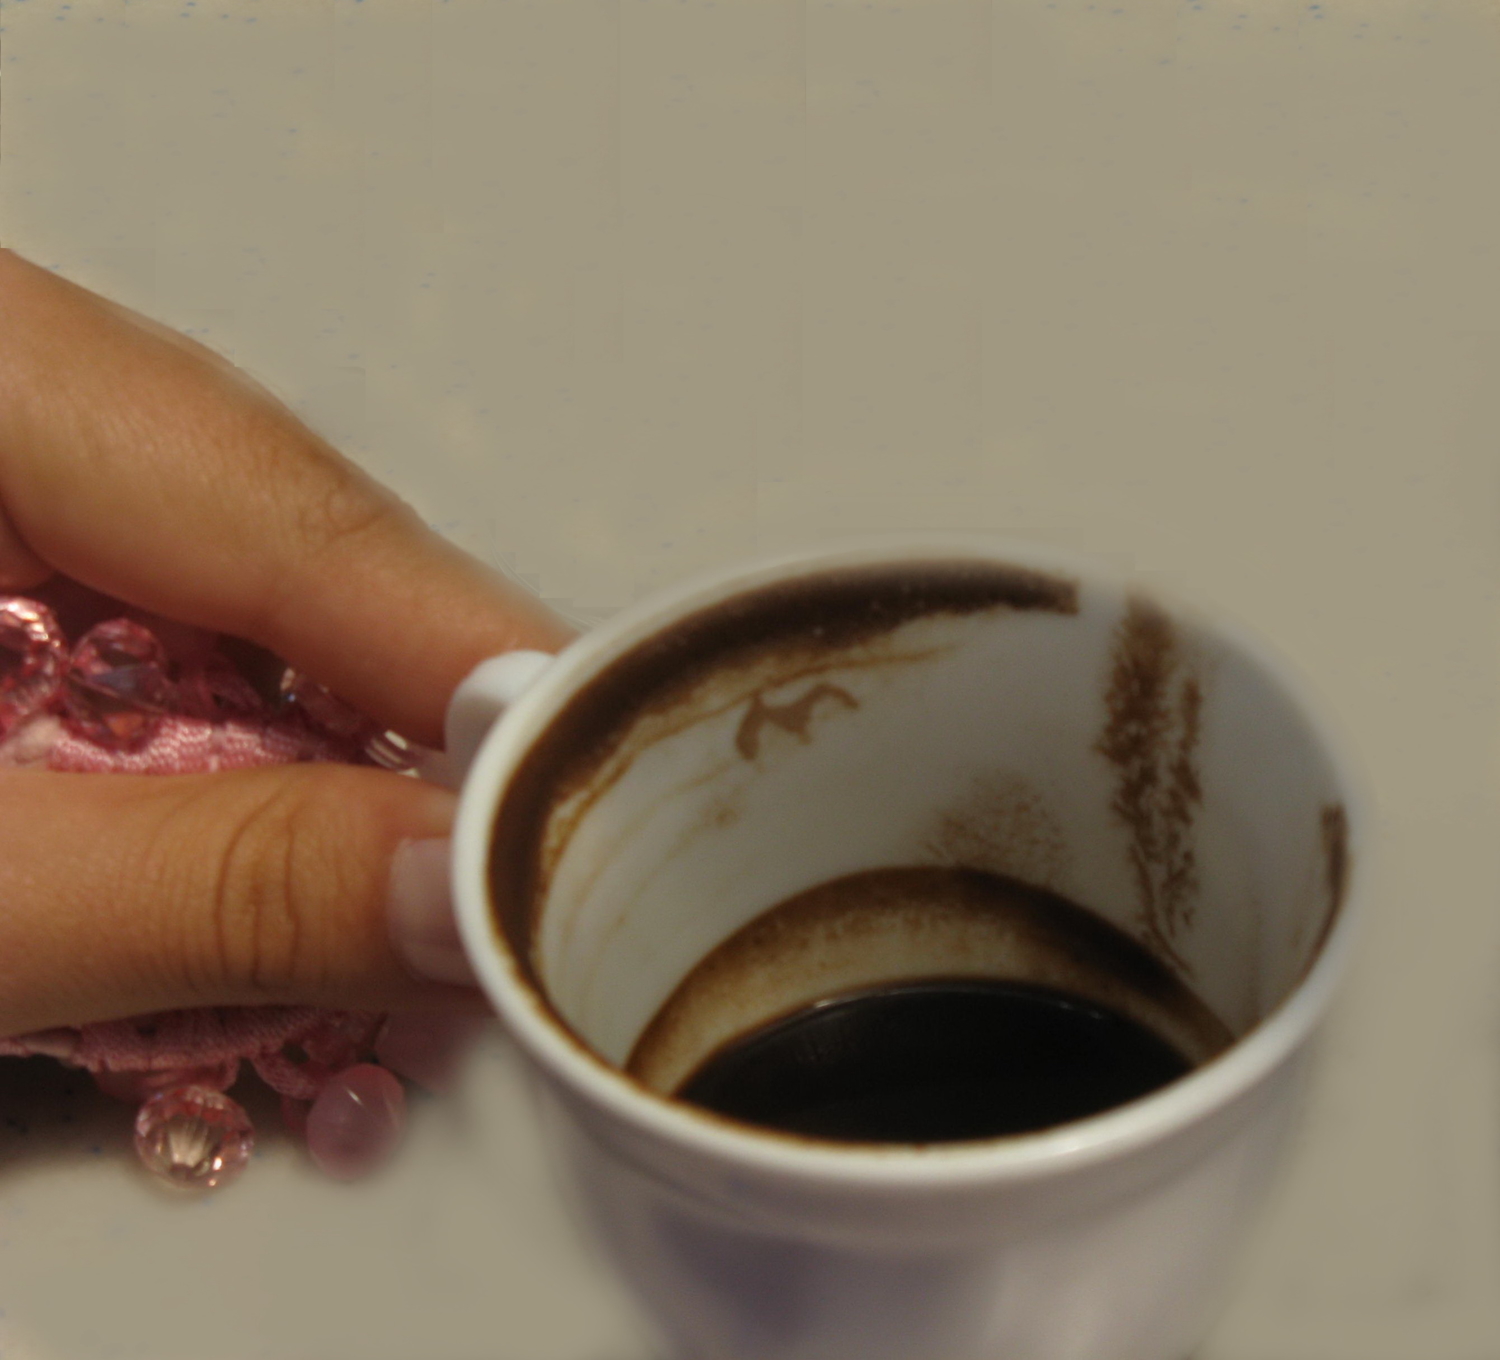 рисование кофе в чашке